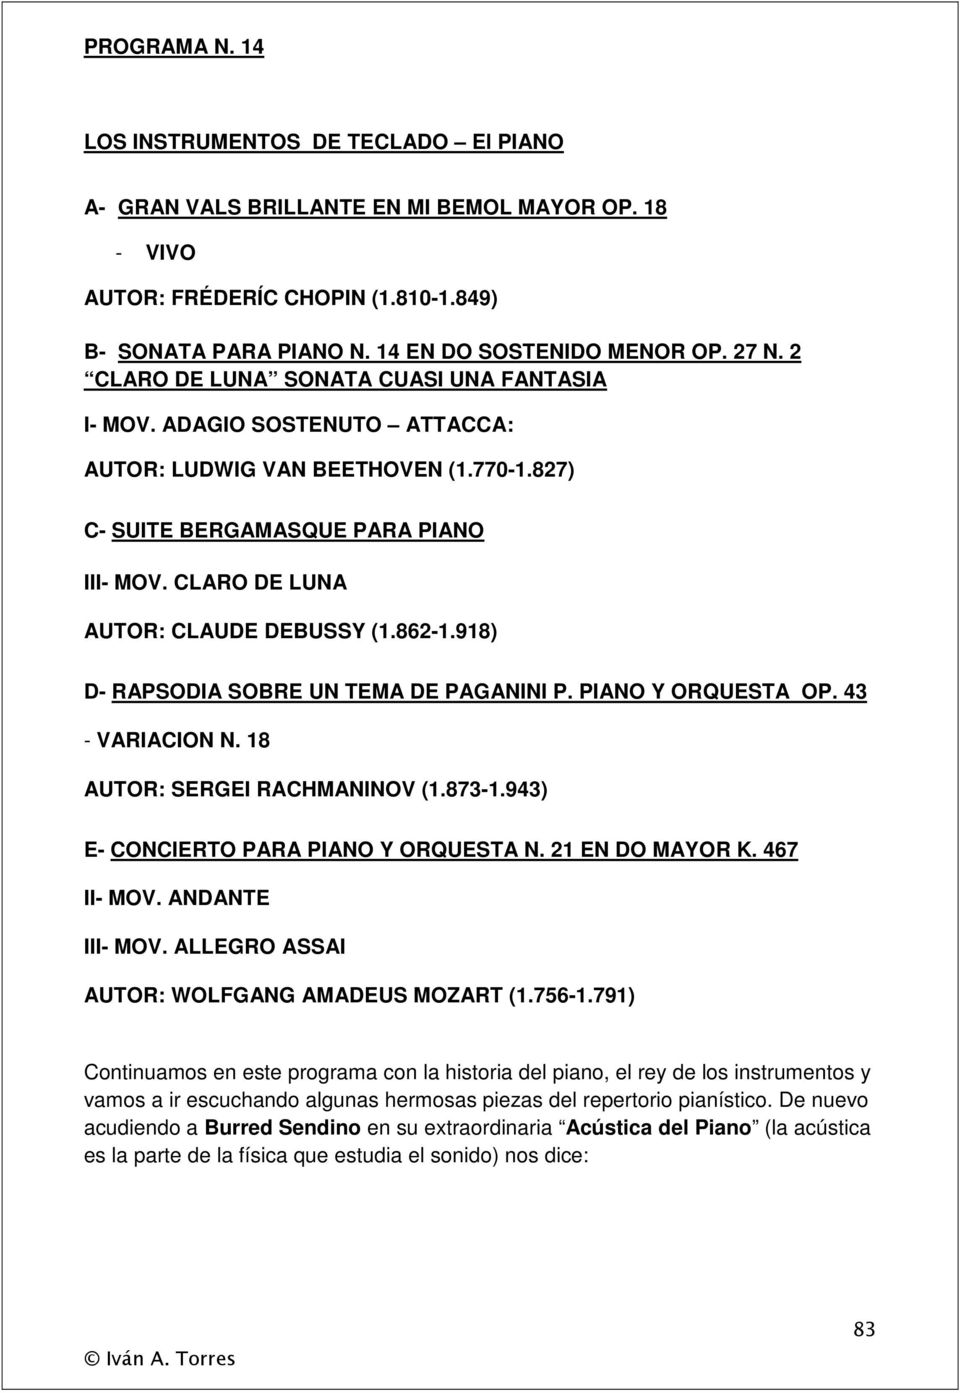 CLARO DE LUNA AUTOR: CLAUDE DEBUSSY (1.862-1.918) D- RAPSODIA SOBRE UN TEMA DE PAGANINI P. PIANO Y ORQUESTA OP. 43 - VARIACION N. 18 AUTOR: SERGEI RACHMANINOV (1.873-1.